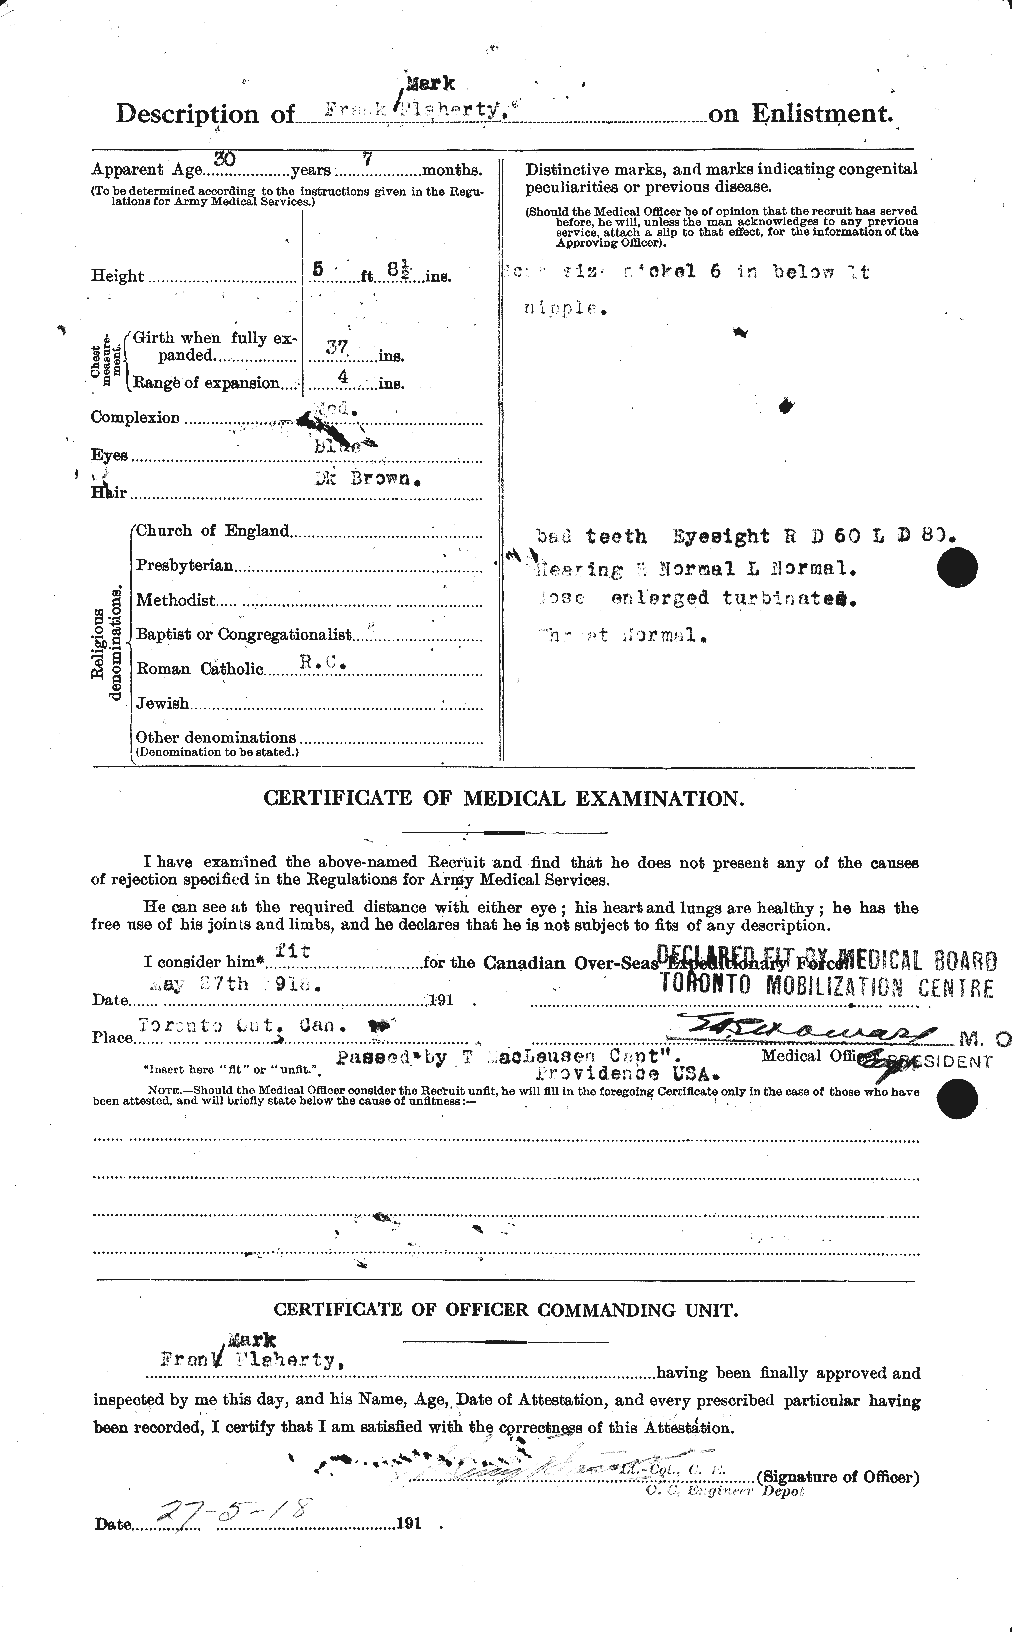 Dossiers du Personnel de la Première Guerre mondiale - CEC 323355b